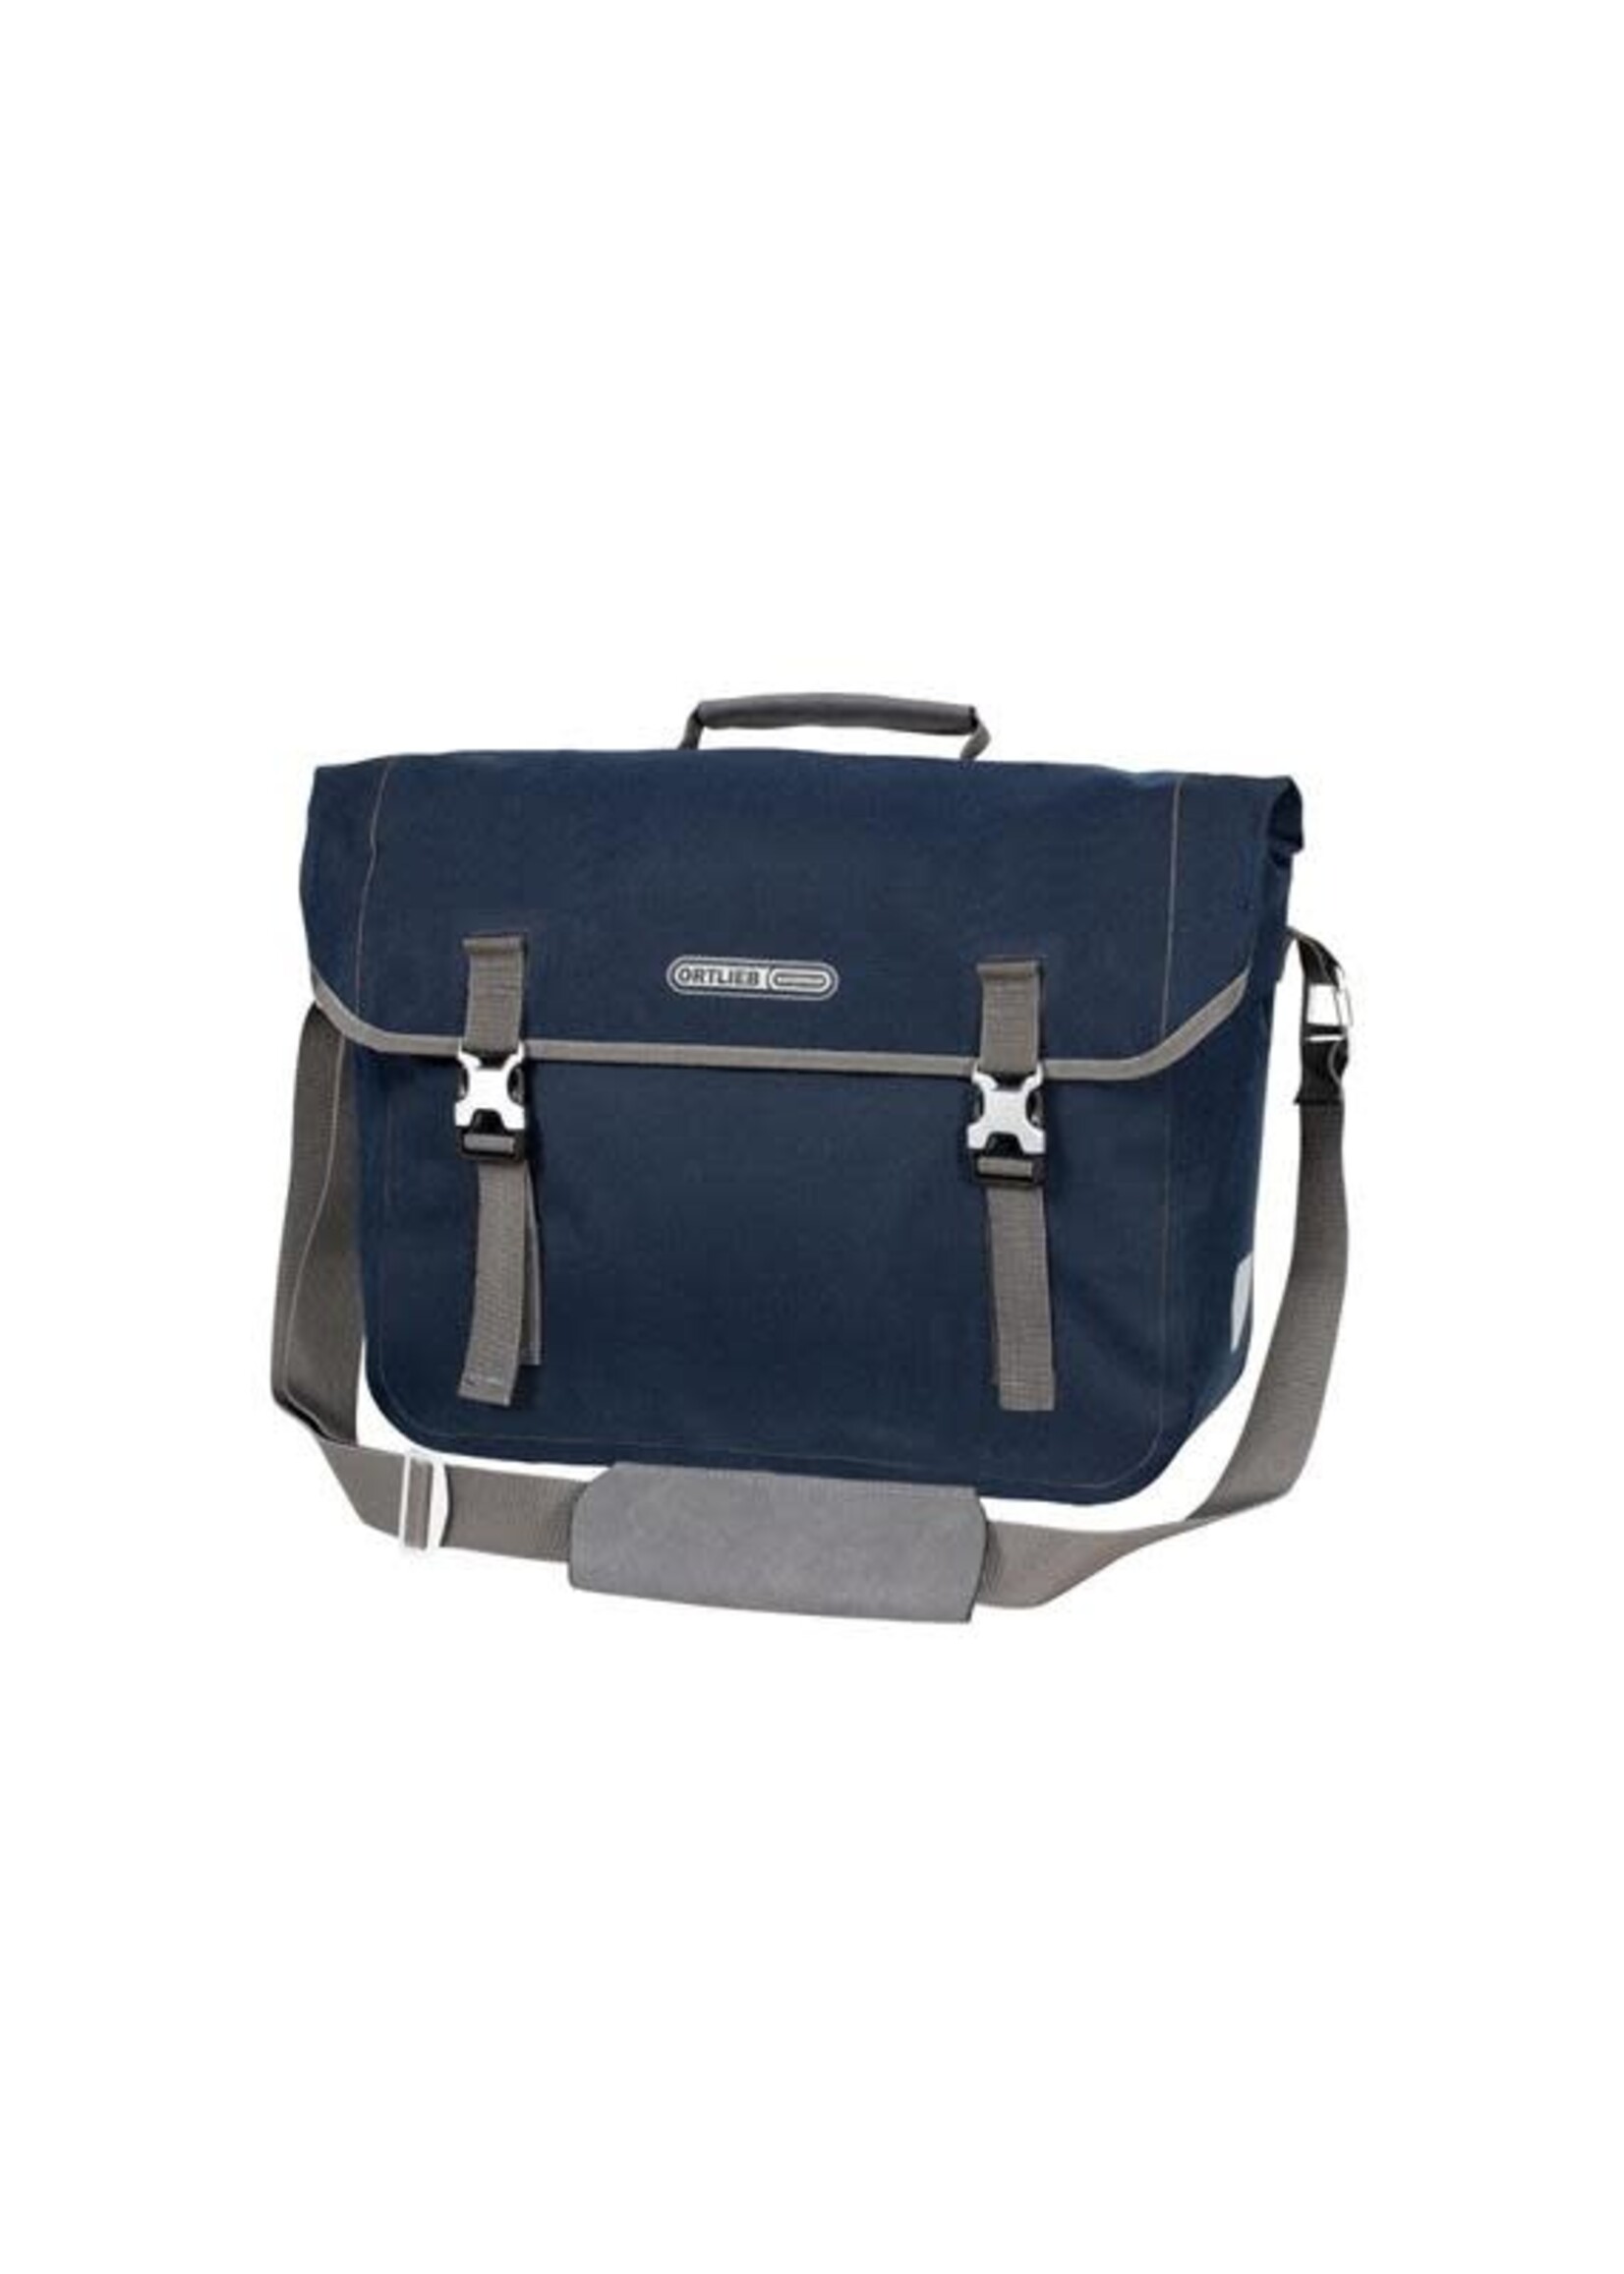 ORTLIEB Commuter-Bag Two Urban QL3.1 - 20 L blu